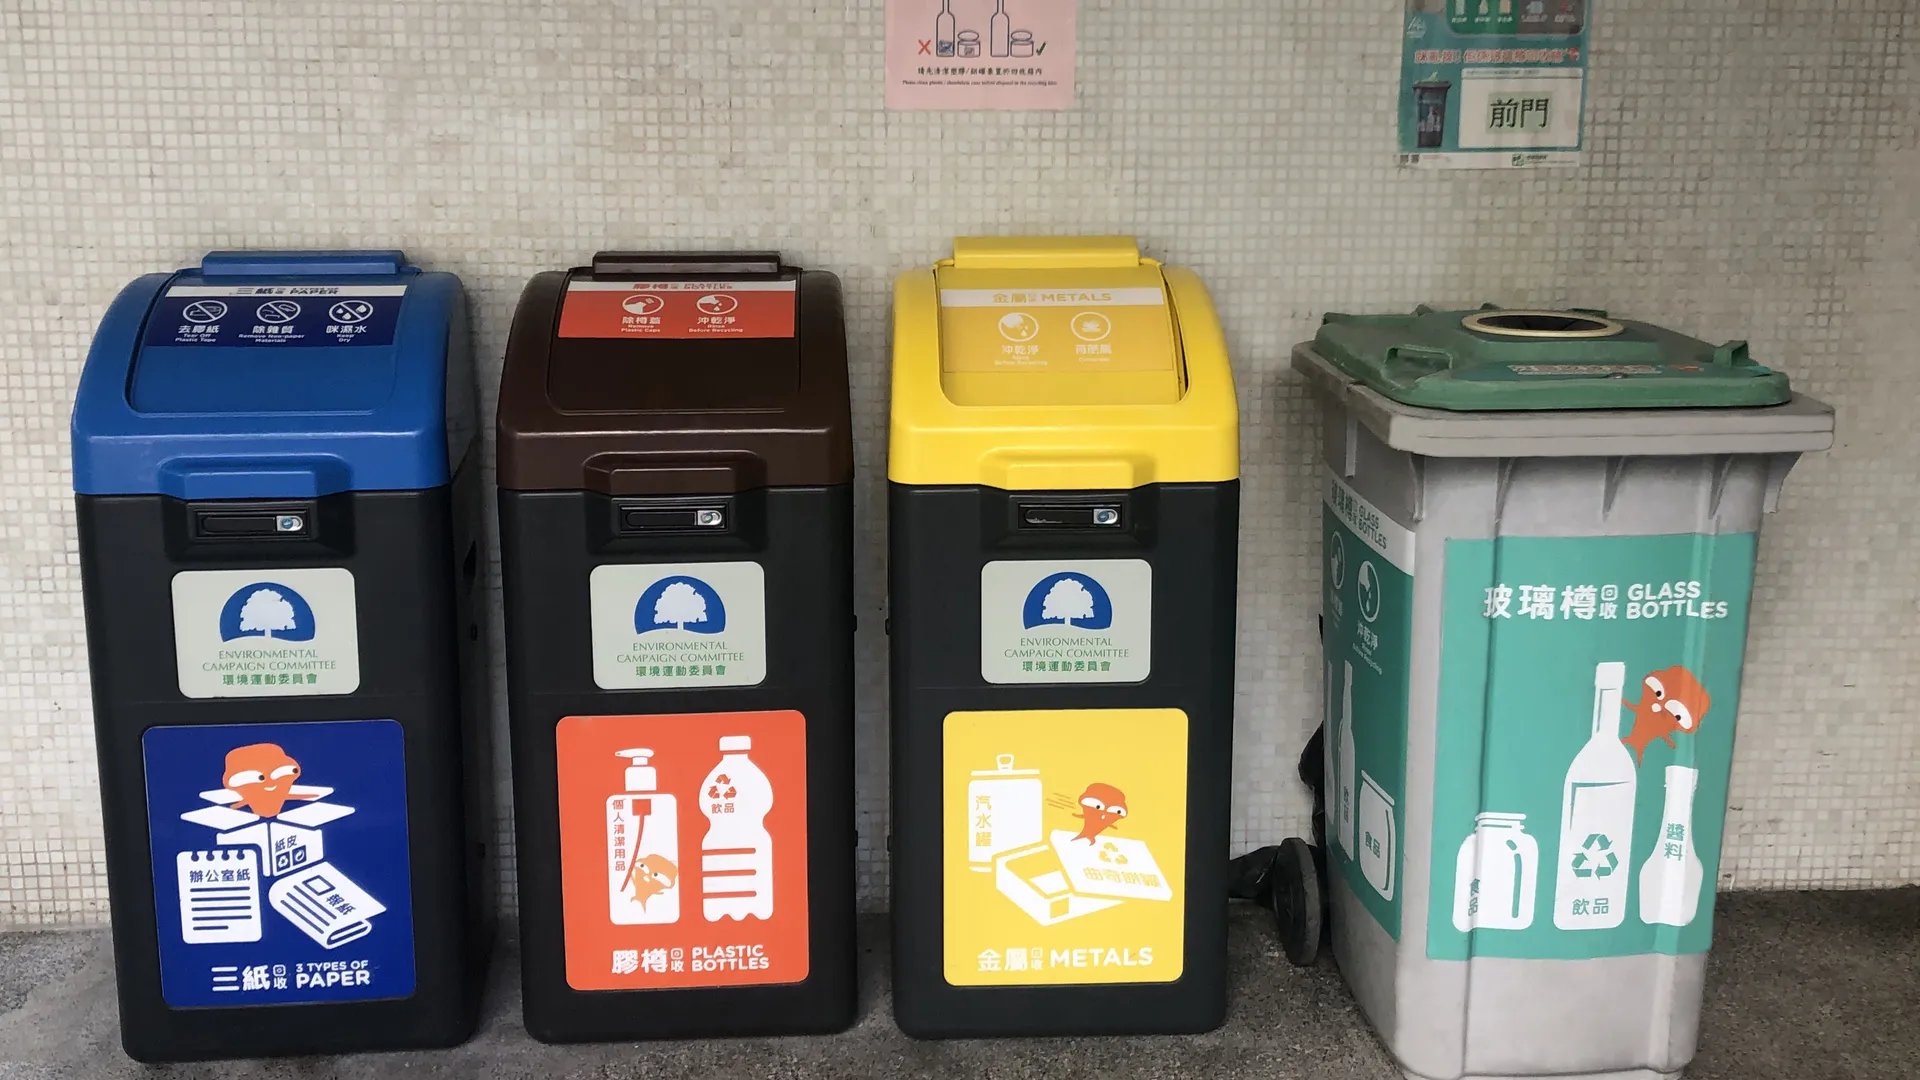 不同废物分类回收桶的种类.包括纸,金属,塑胶及玻璃樽